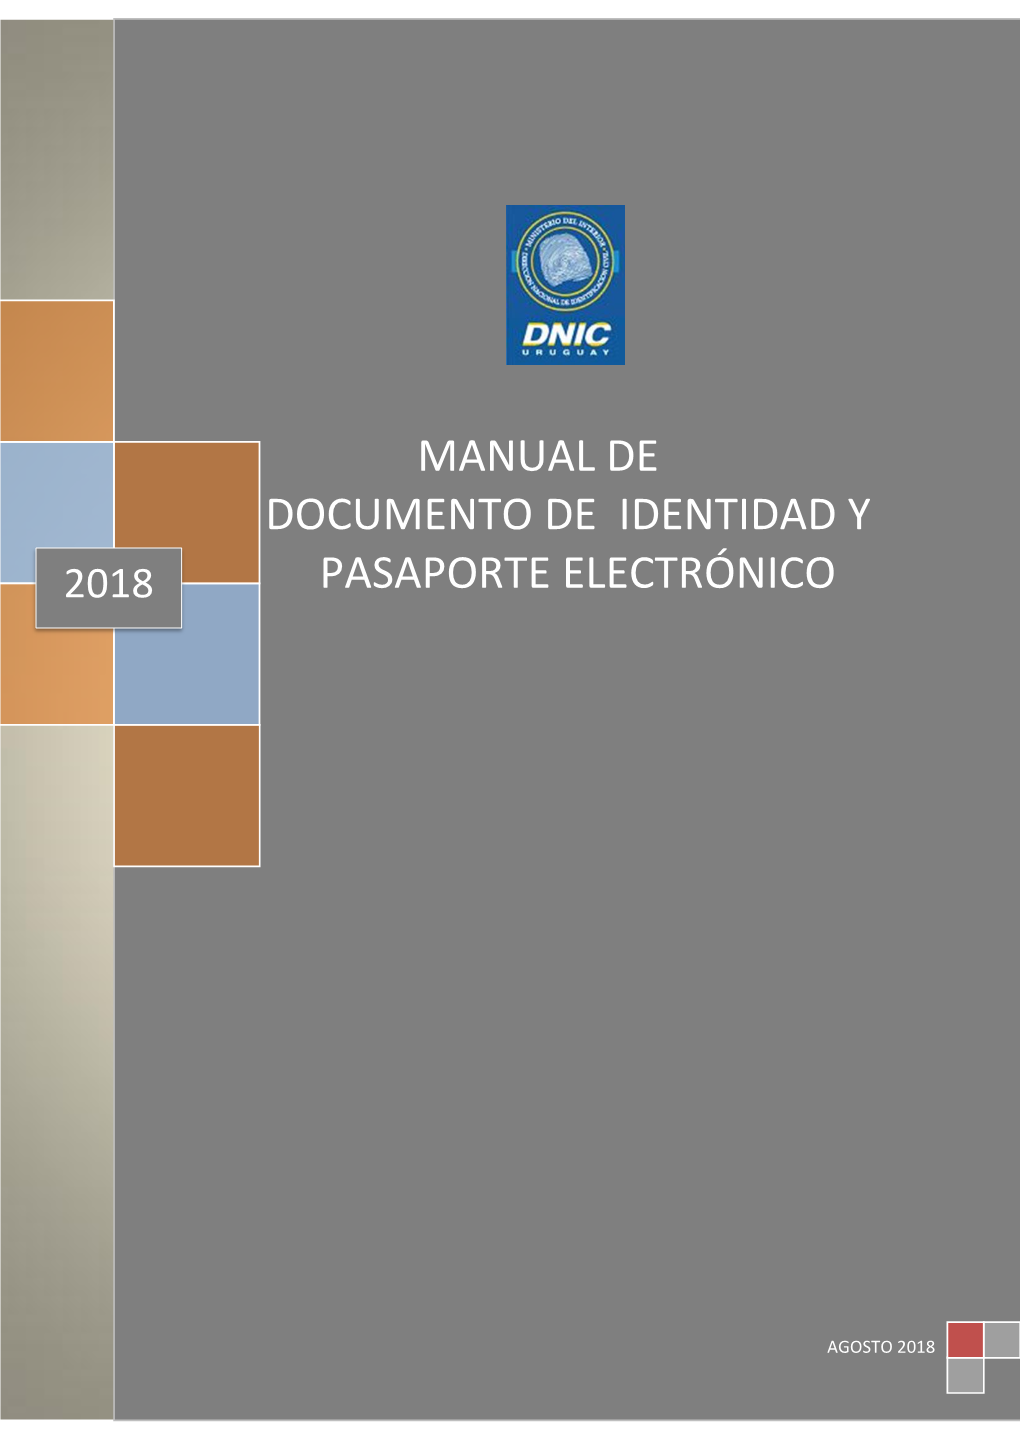 2018 Pasaporte Electrónico